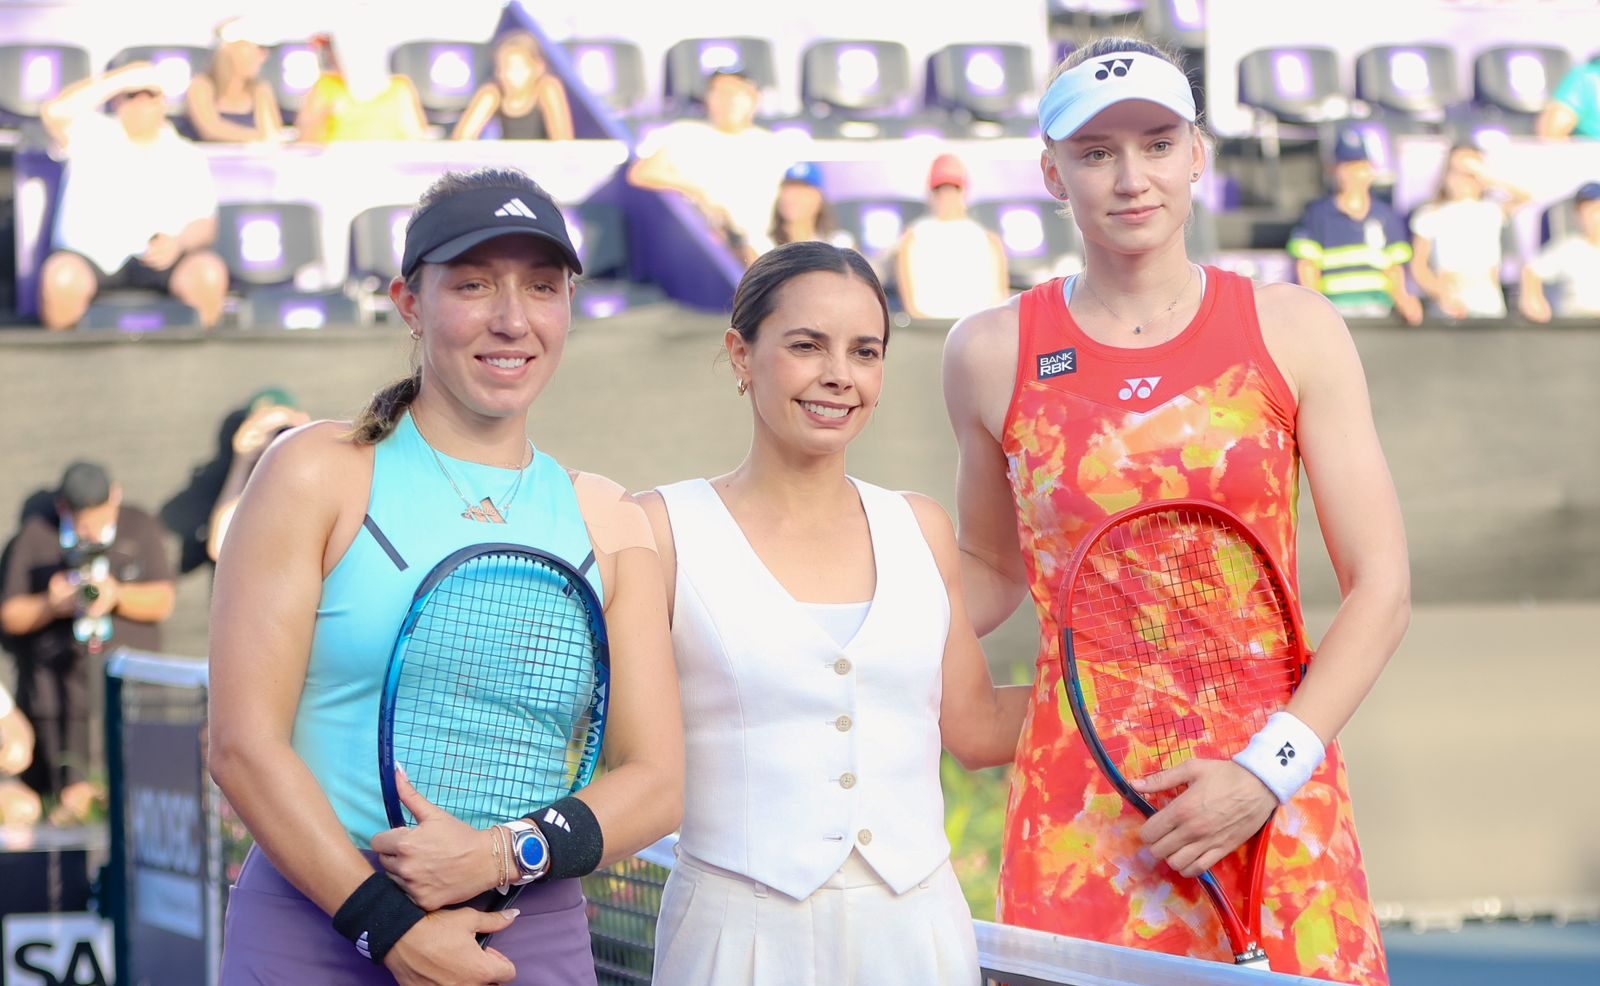 Inicia en Cancún el torneo de tenis femenil más importante del mundo